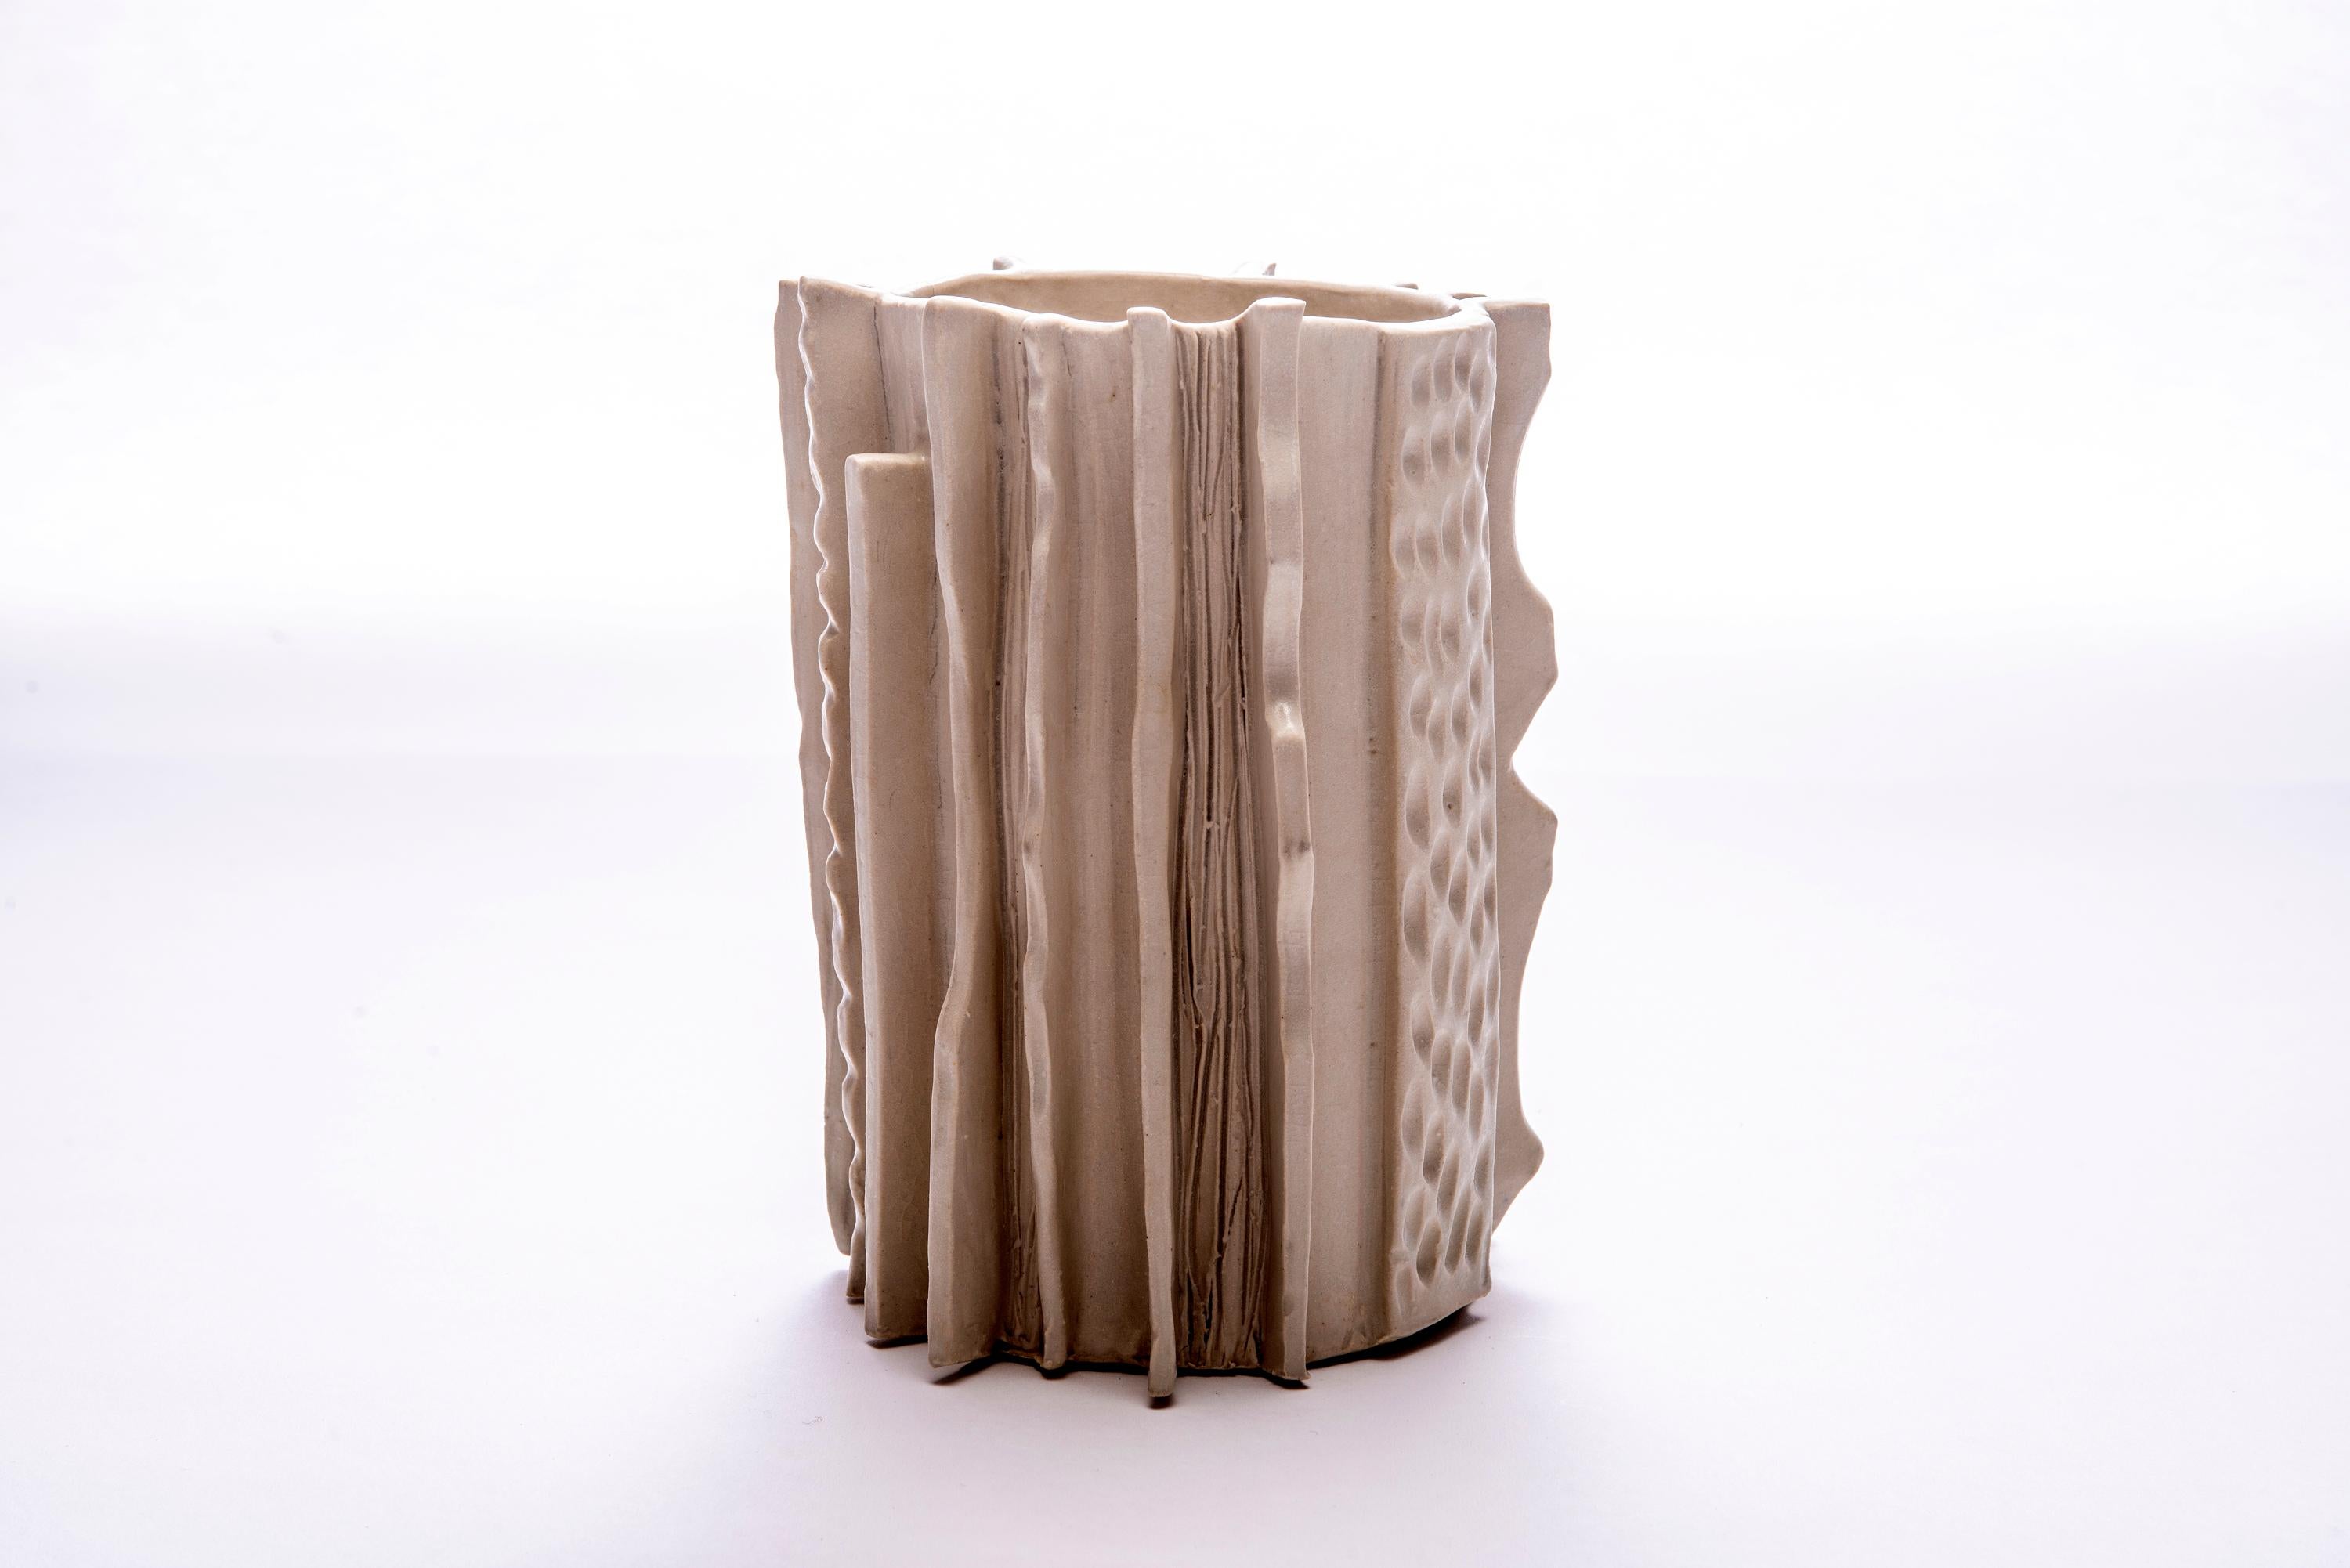 Trish DeMasi
Marcello, 2020
Glasierte Keramik
8 x 6 x 6 Zoll

Die Moderno-Kollektion von Trish DeMasi zeichnet sich durch geometrische Formen, üppige Texturen und angenehme neutrale Farben in Form von glasierten Keramikgefäßen und Dosen aus.